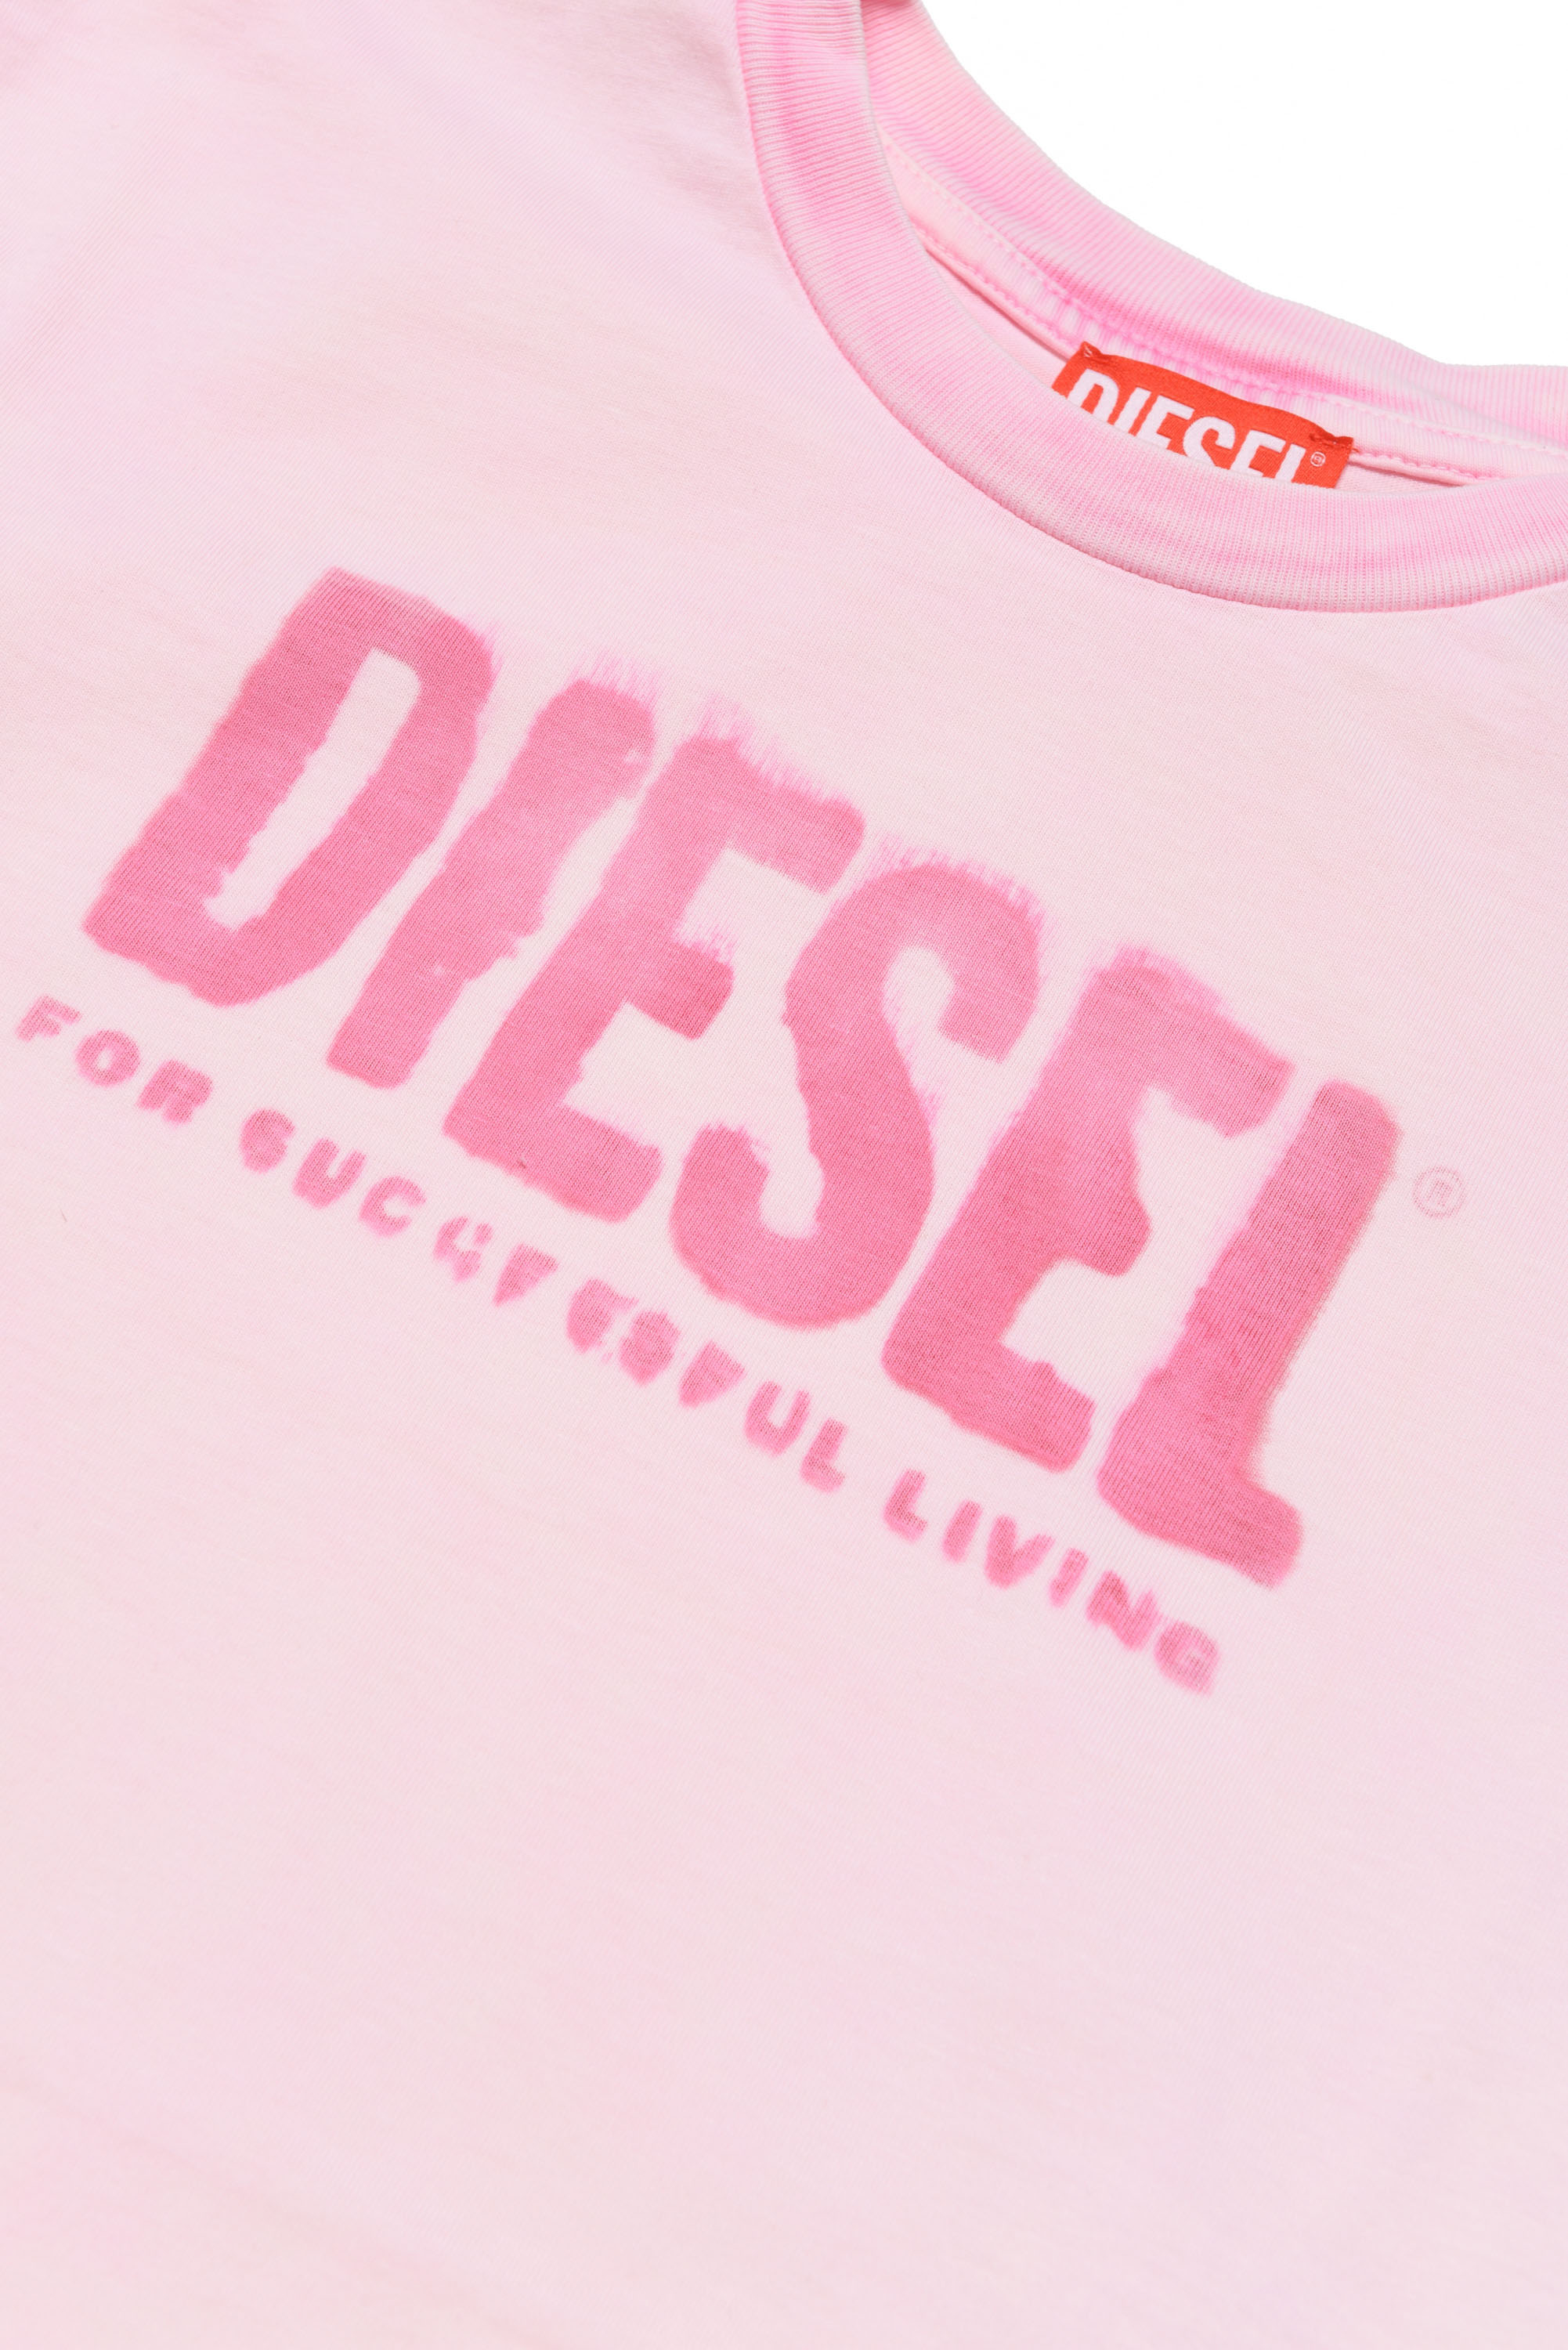 Diesel - TOILFY, Pink - Image 3